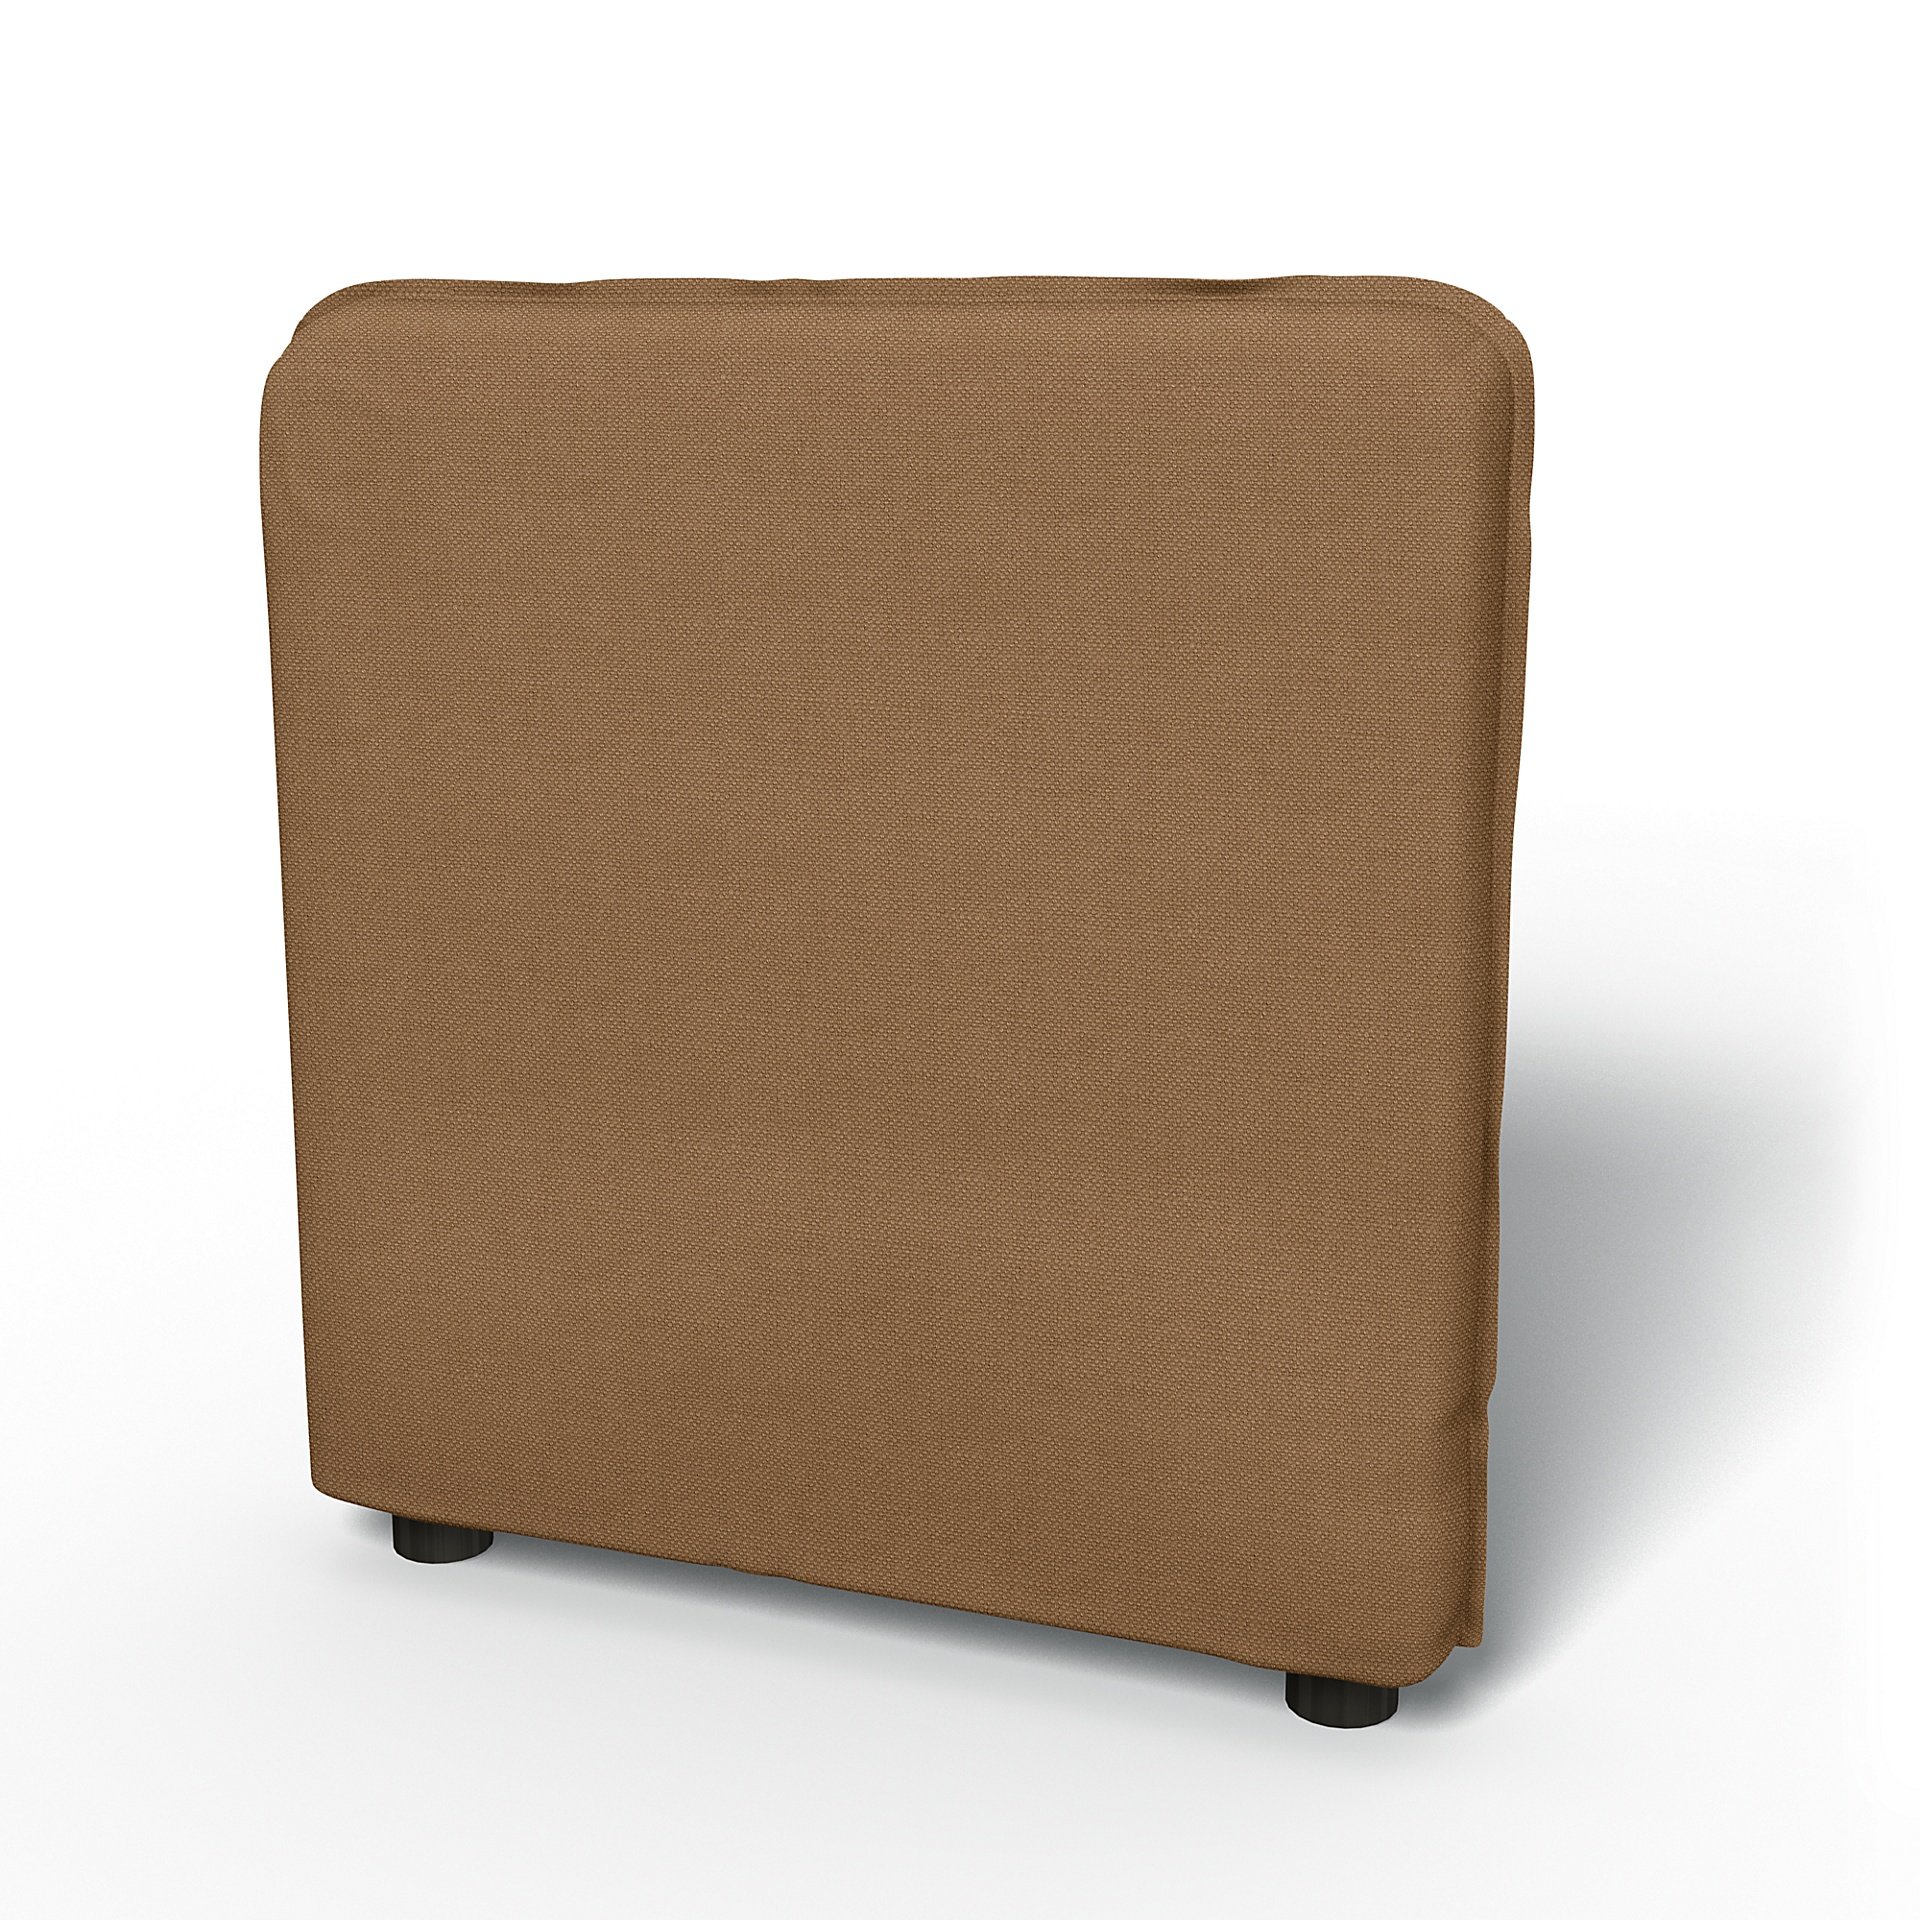 IKEA - Vallentuna Armrest Cover (80x60x13cm), Nougat, Linen - Bemz